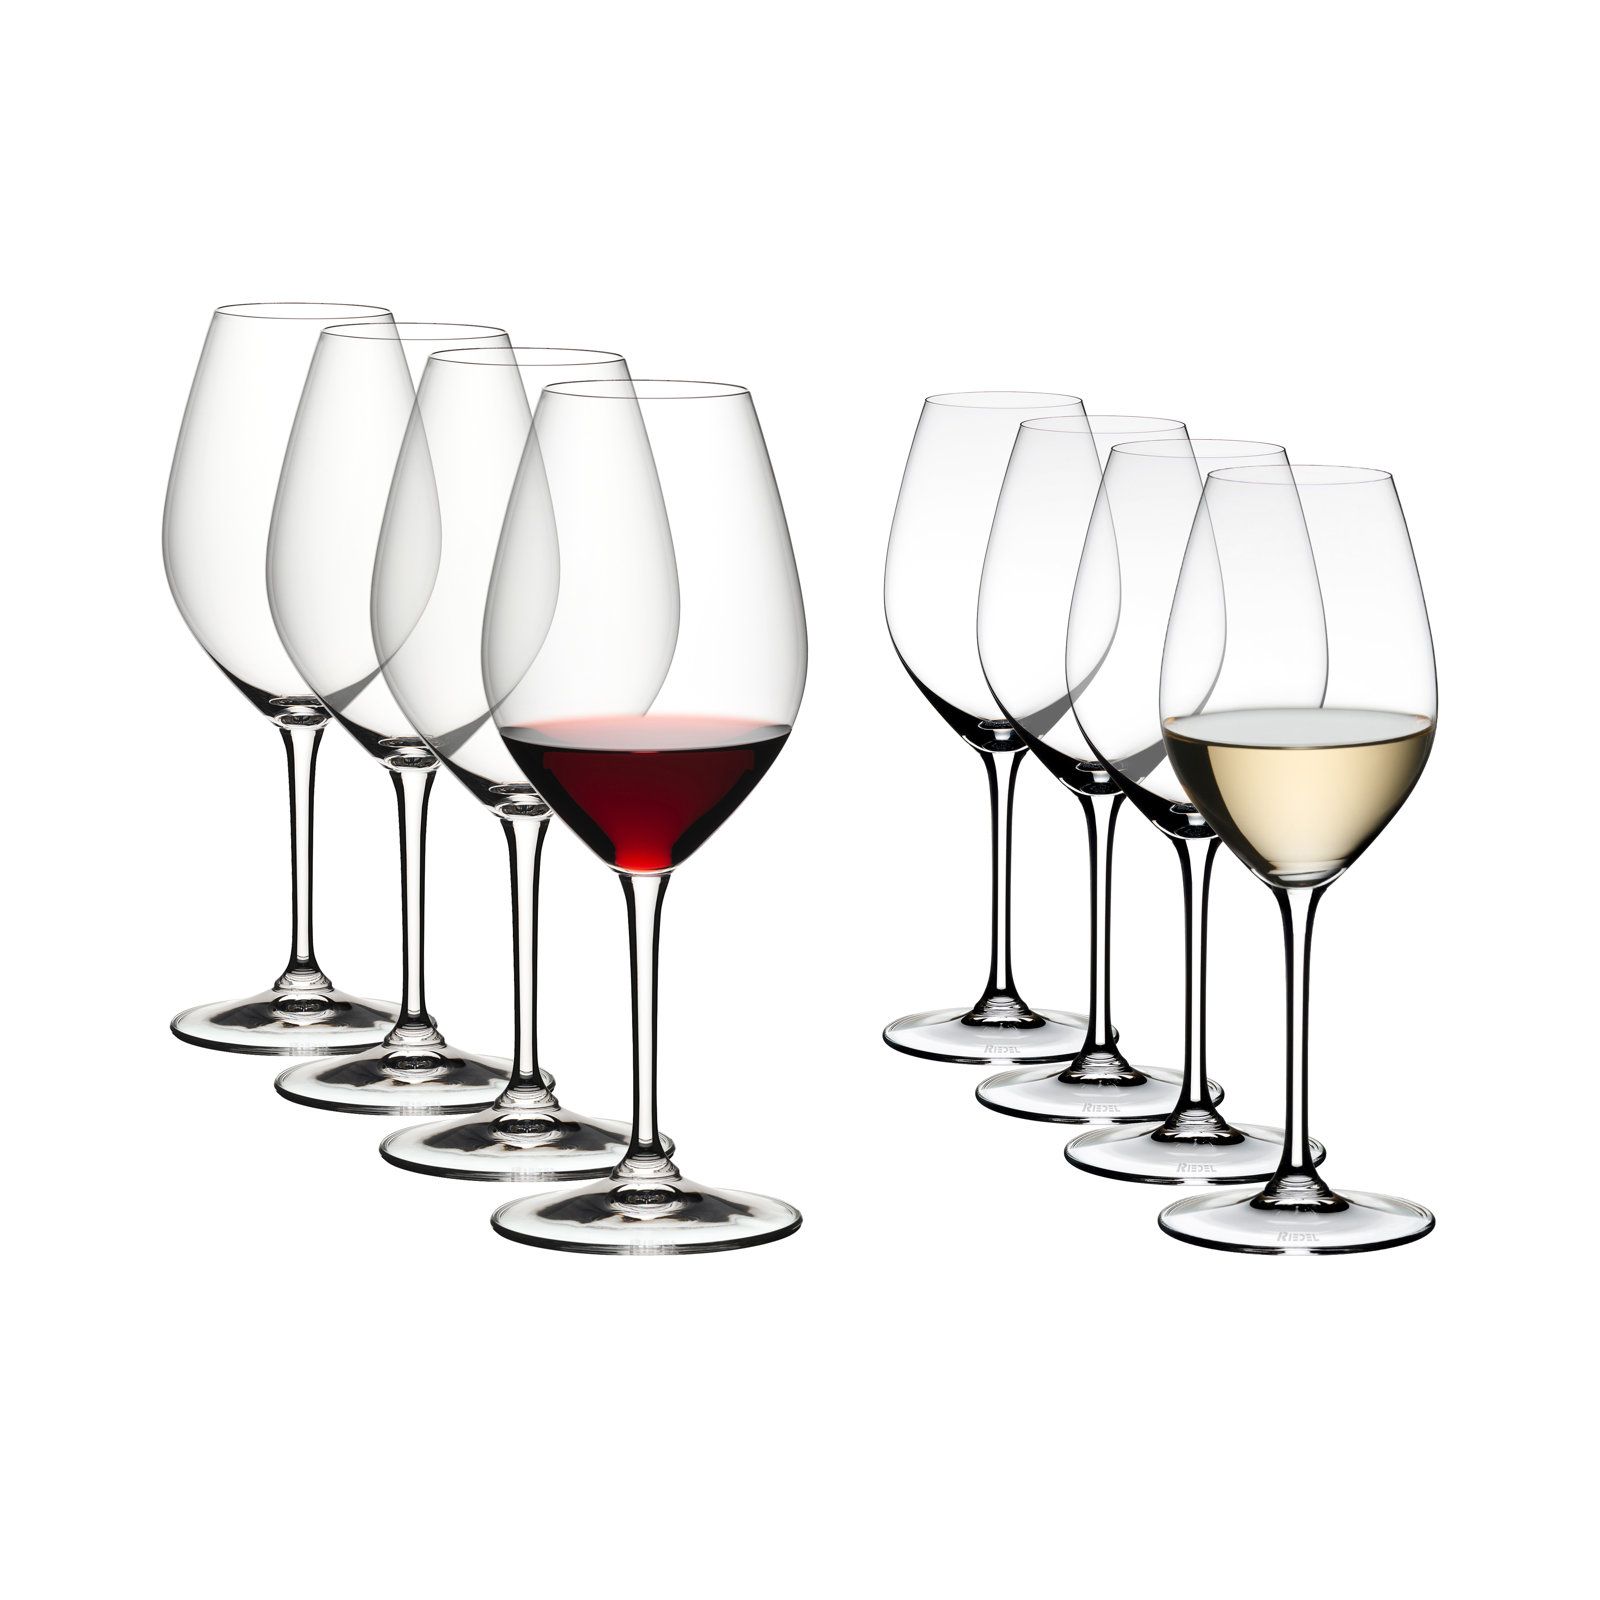 8-Piece Wine Glasses Set